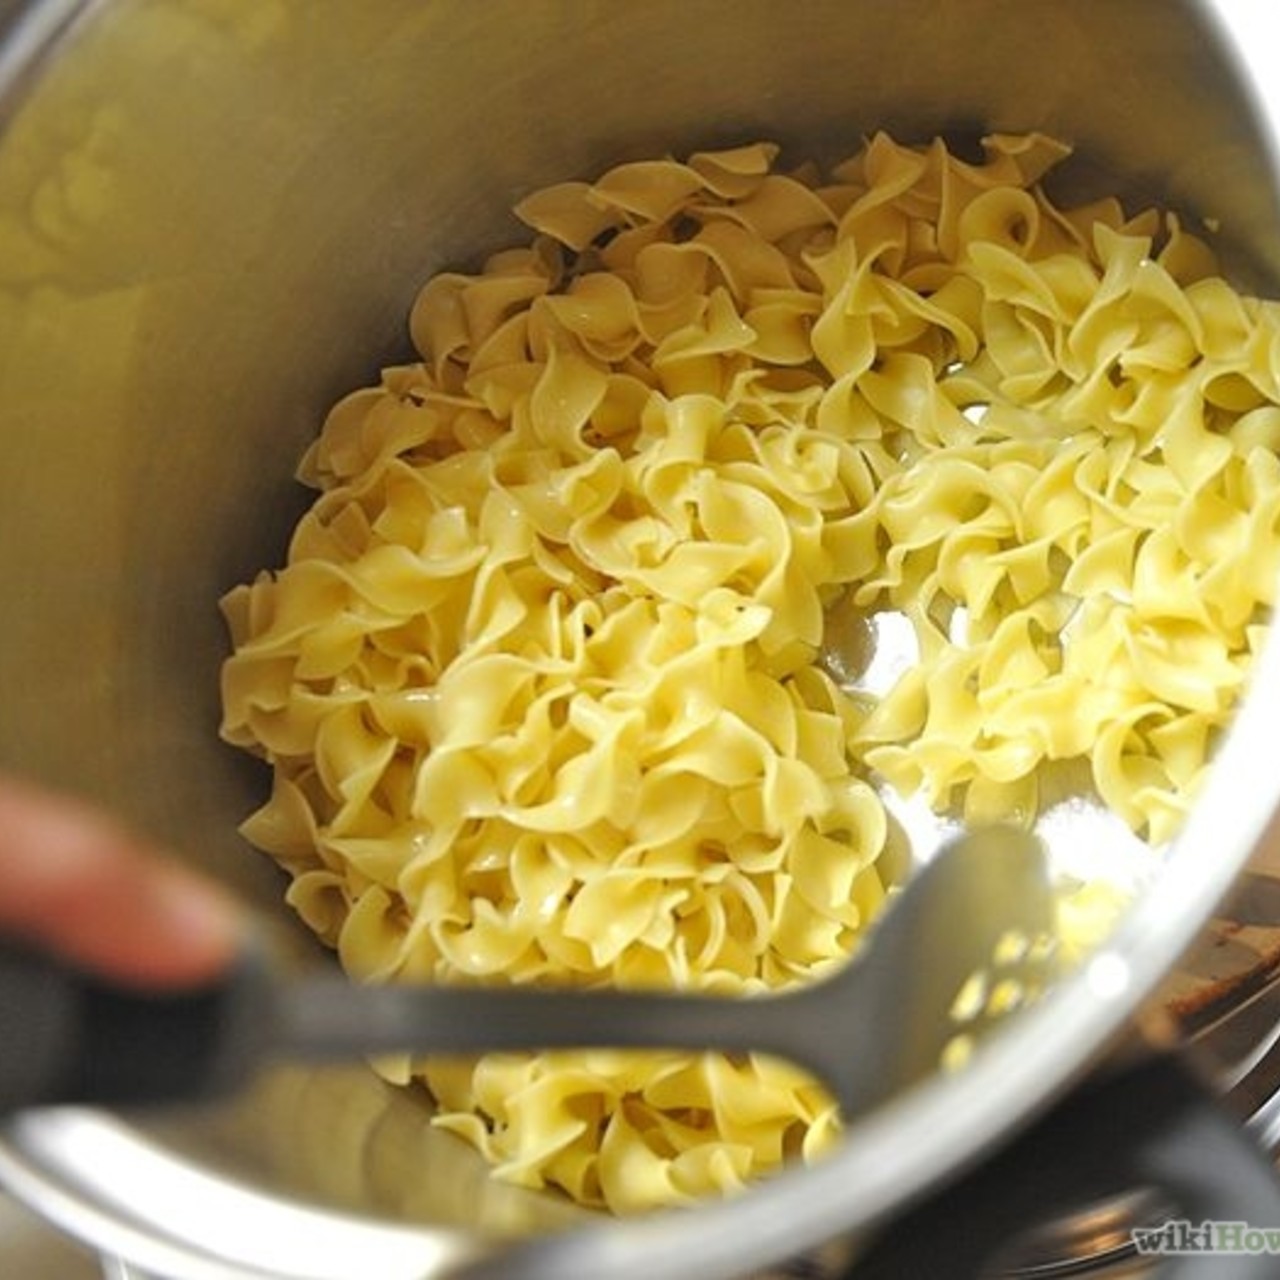 Parmesan Buttered Egg Noodles